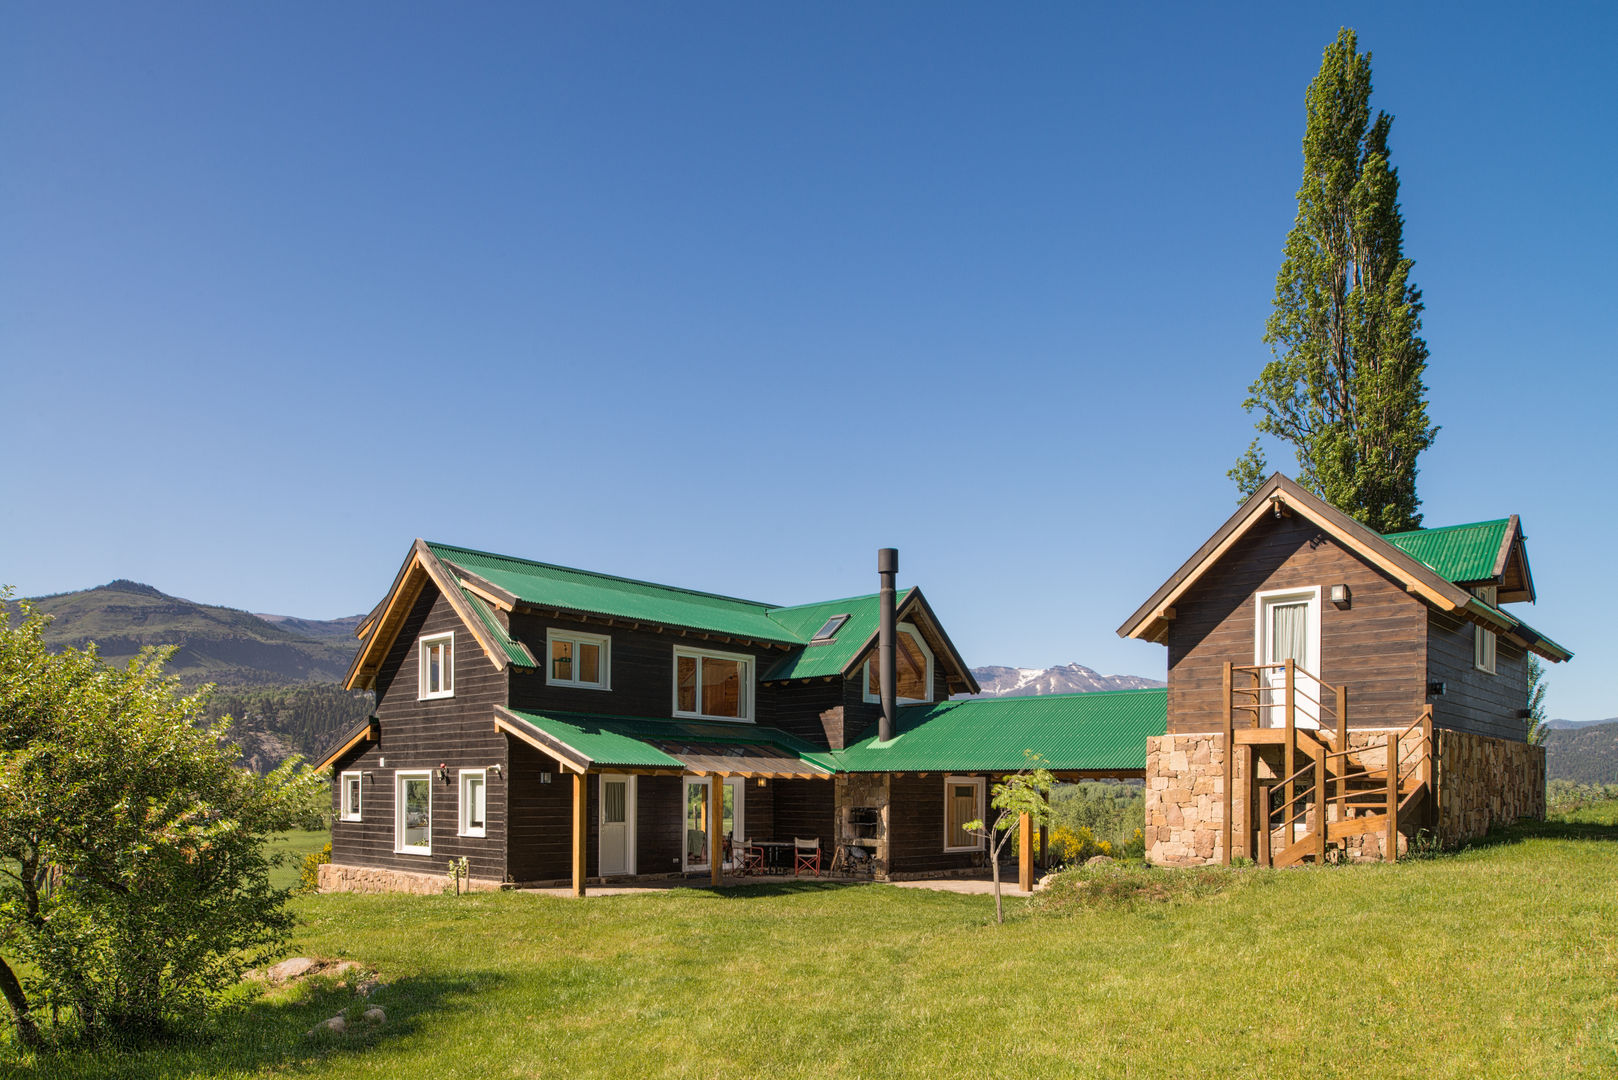 Casa de madera en San Martin de los Andes, Patagonia Log Homes - Arquitectos - Neuquén Patagonia Log Homes - Arquitectos - Neuquén Wooden houses Solid Wood Multicolored